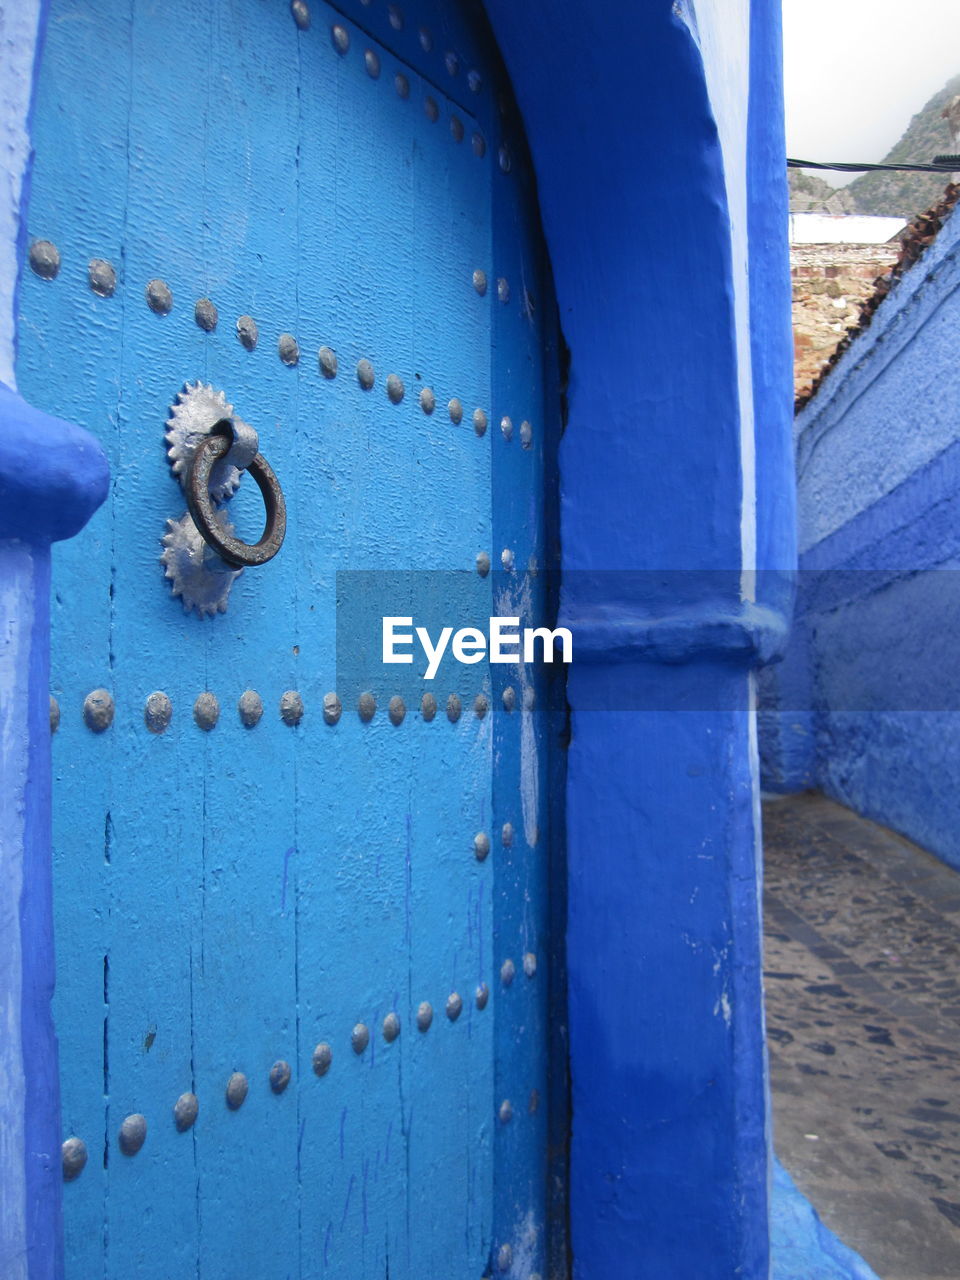 Metallic knocker on blue door